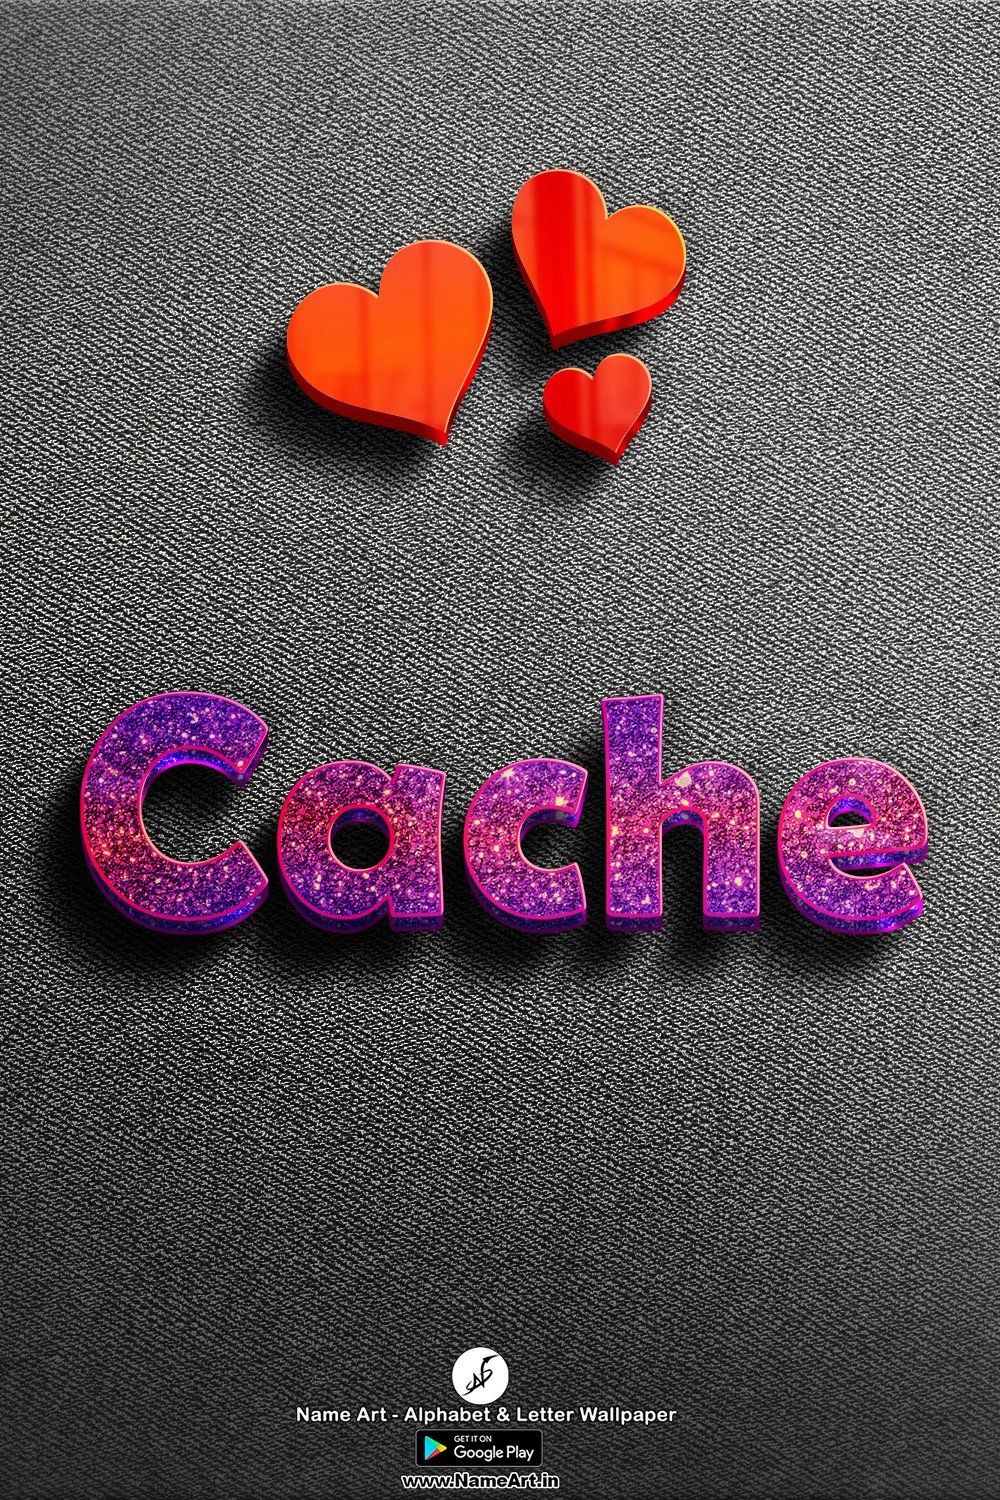 Cache | Whatsapp Status Cache | Happy Birthday Cache To You !! | Cache New Whatsapp Status images |